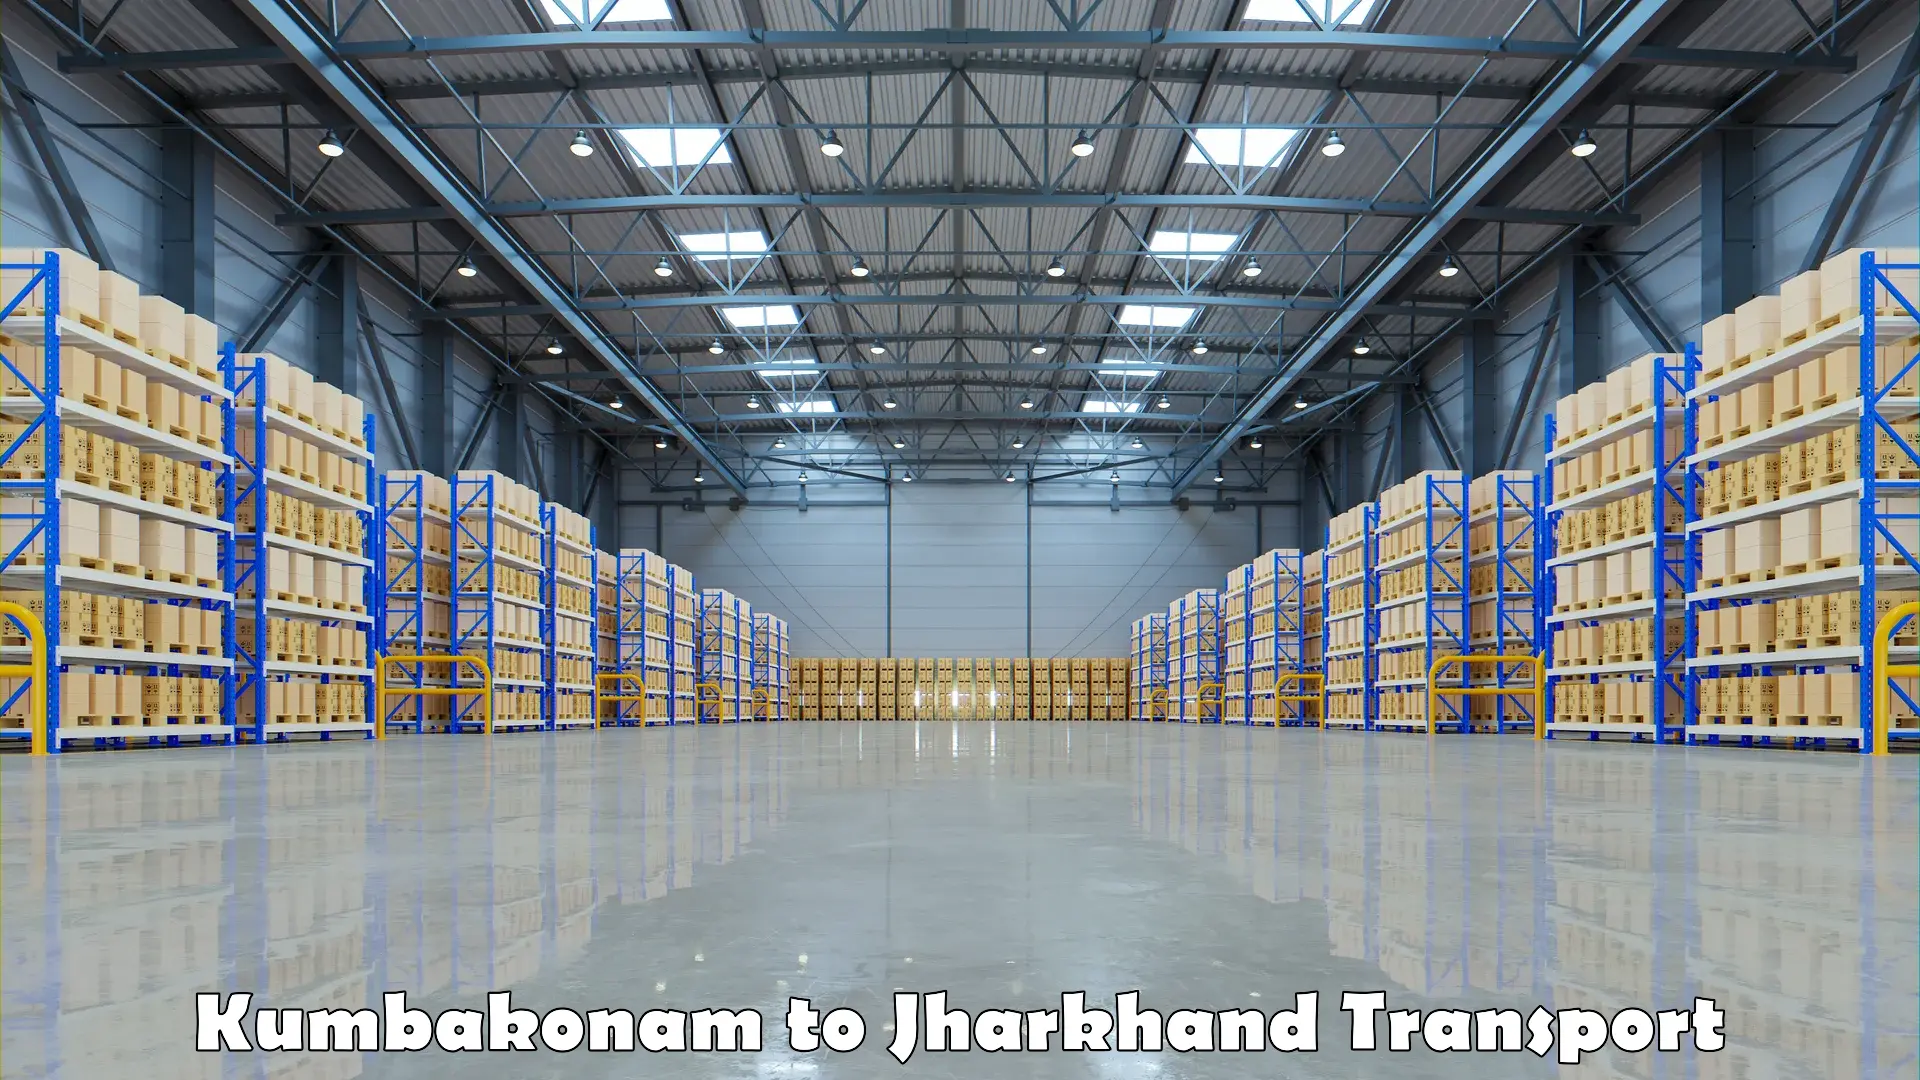 Container transport service Kumbakonam to Barwadih